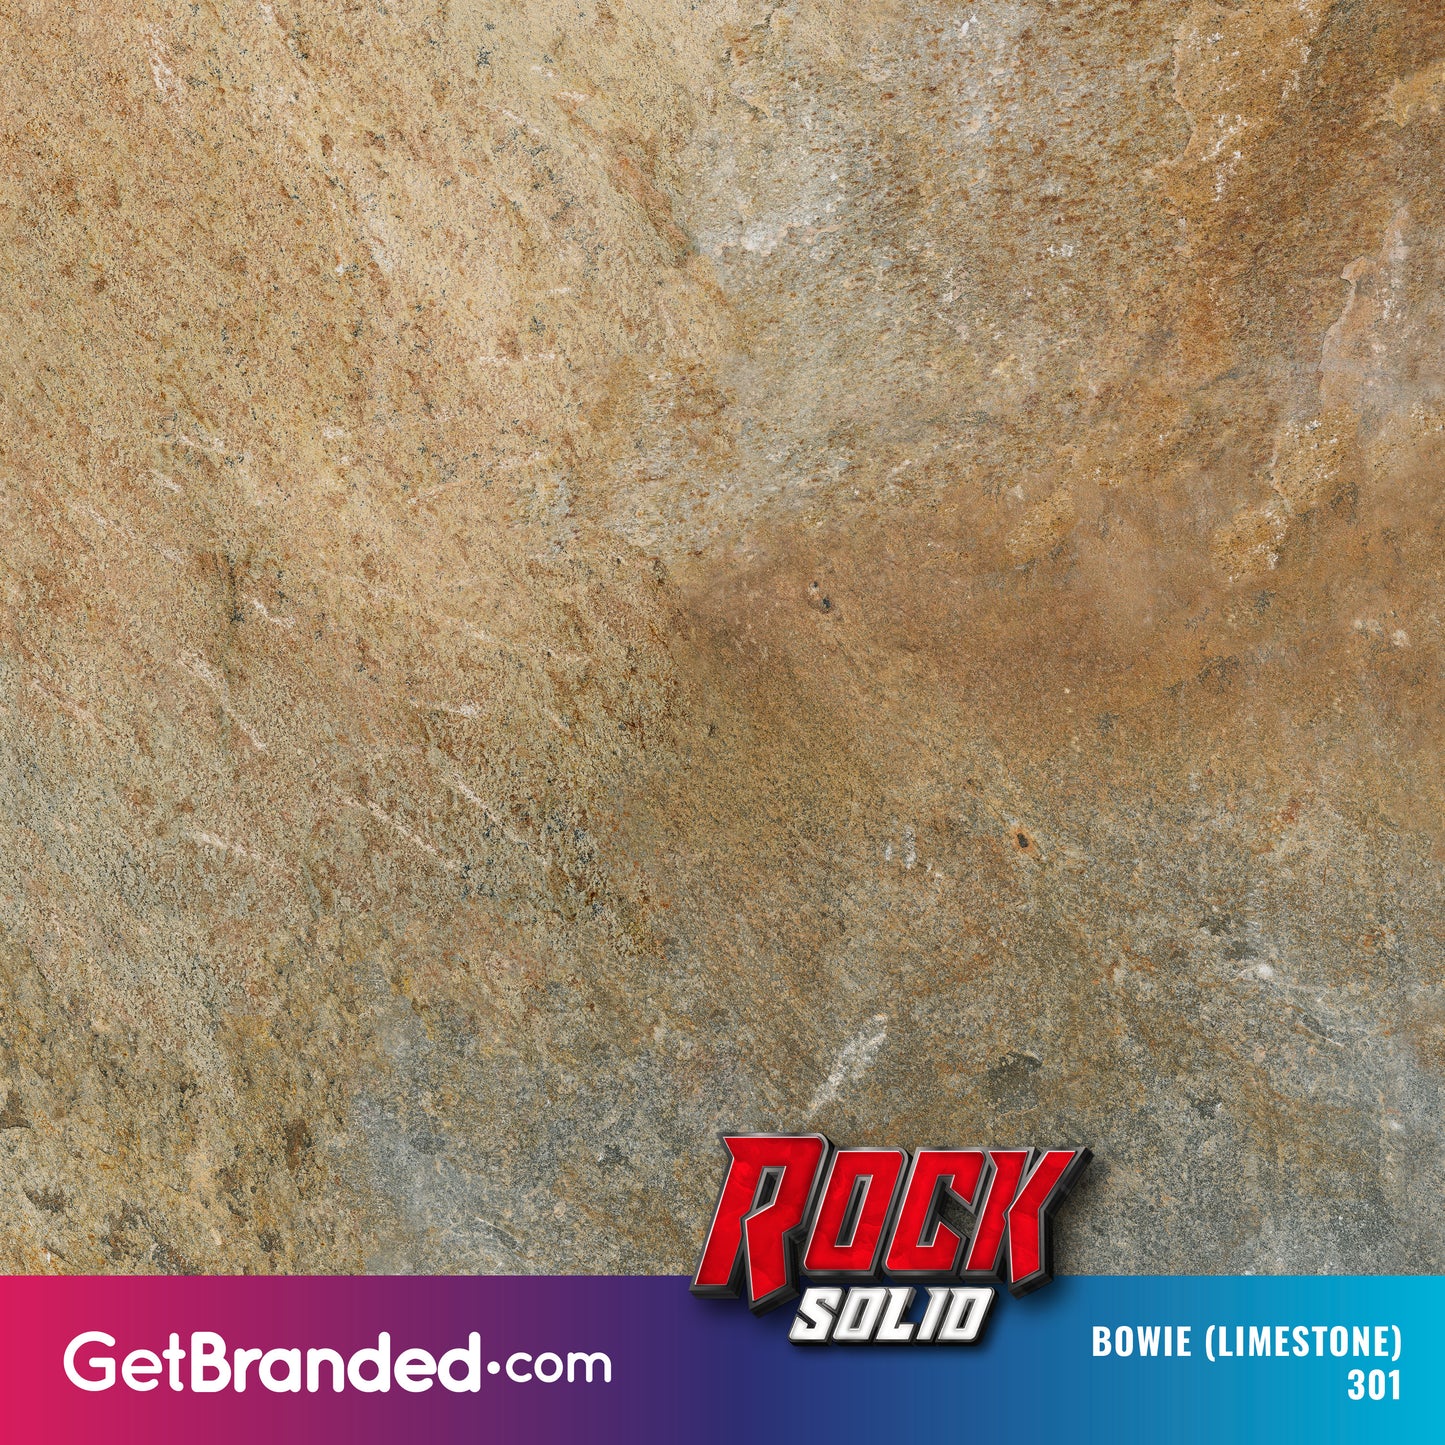 Bowie Limestone RockSolid™ Wrap Pattern Image.